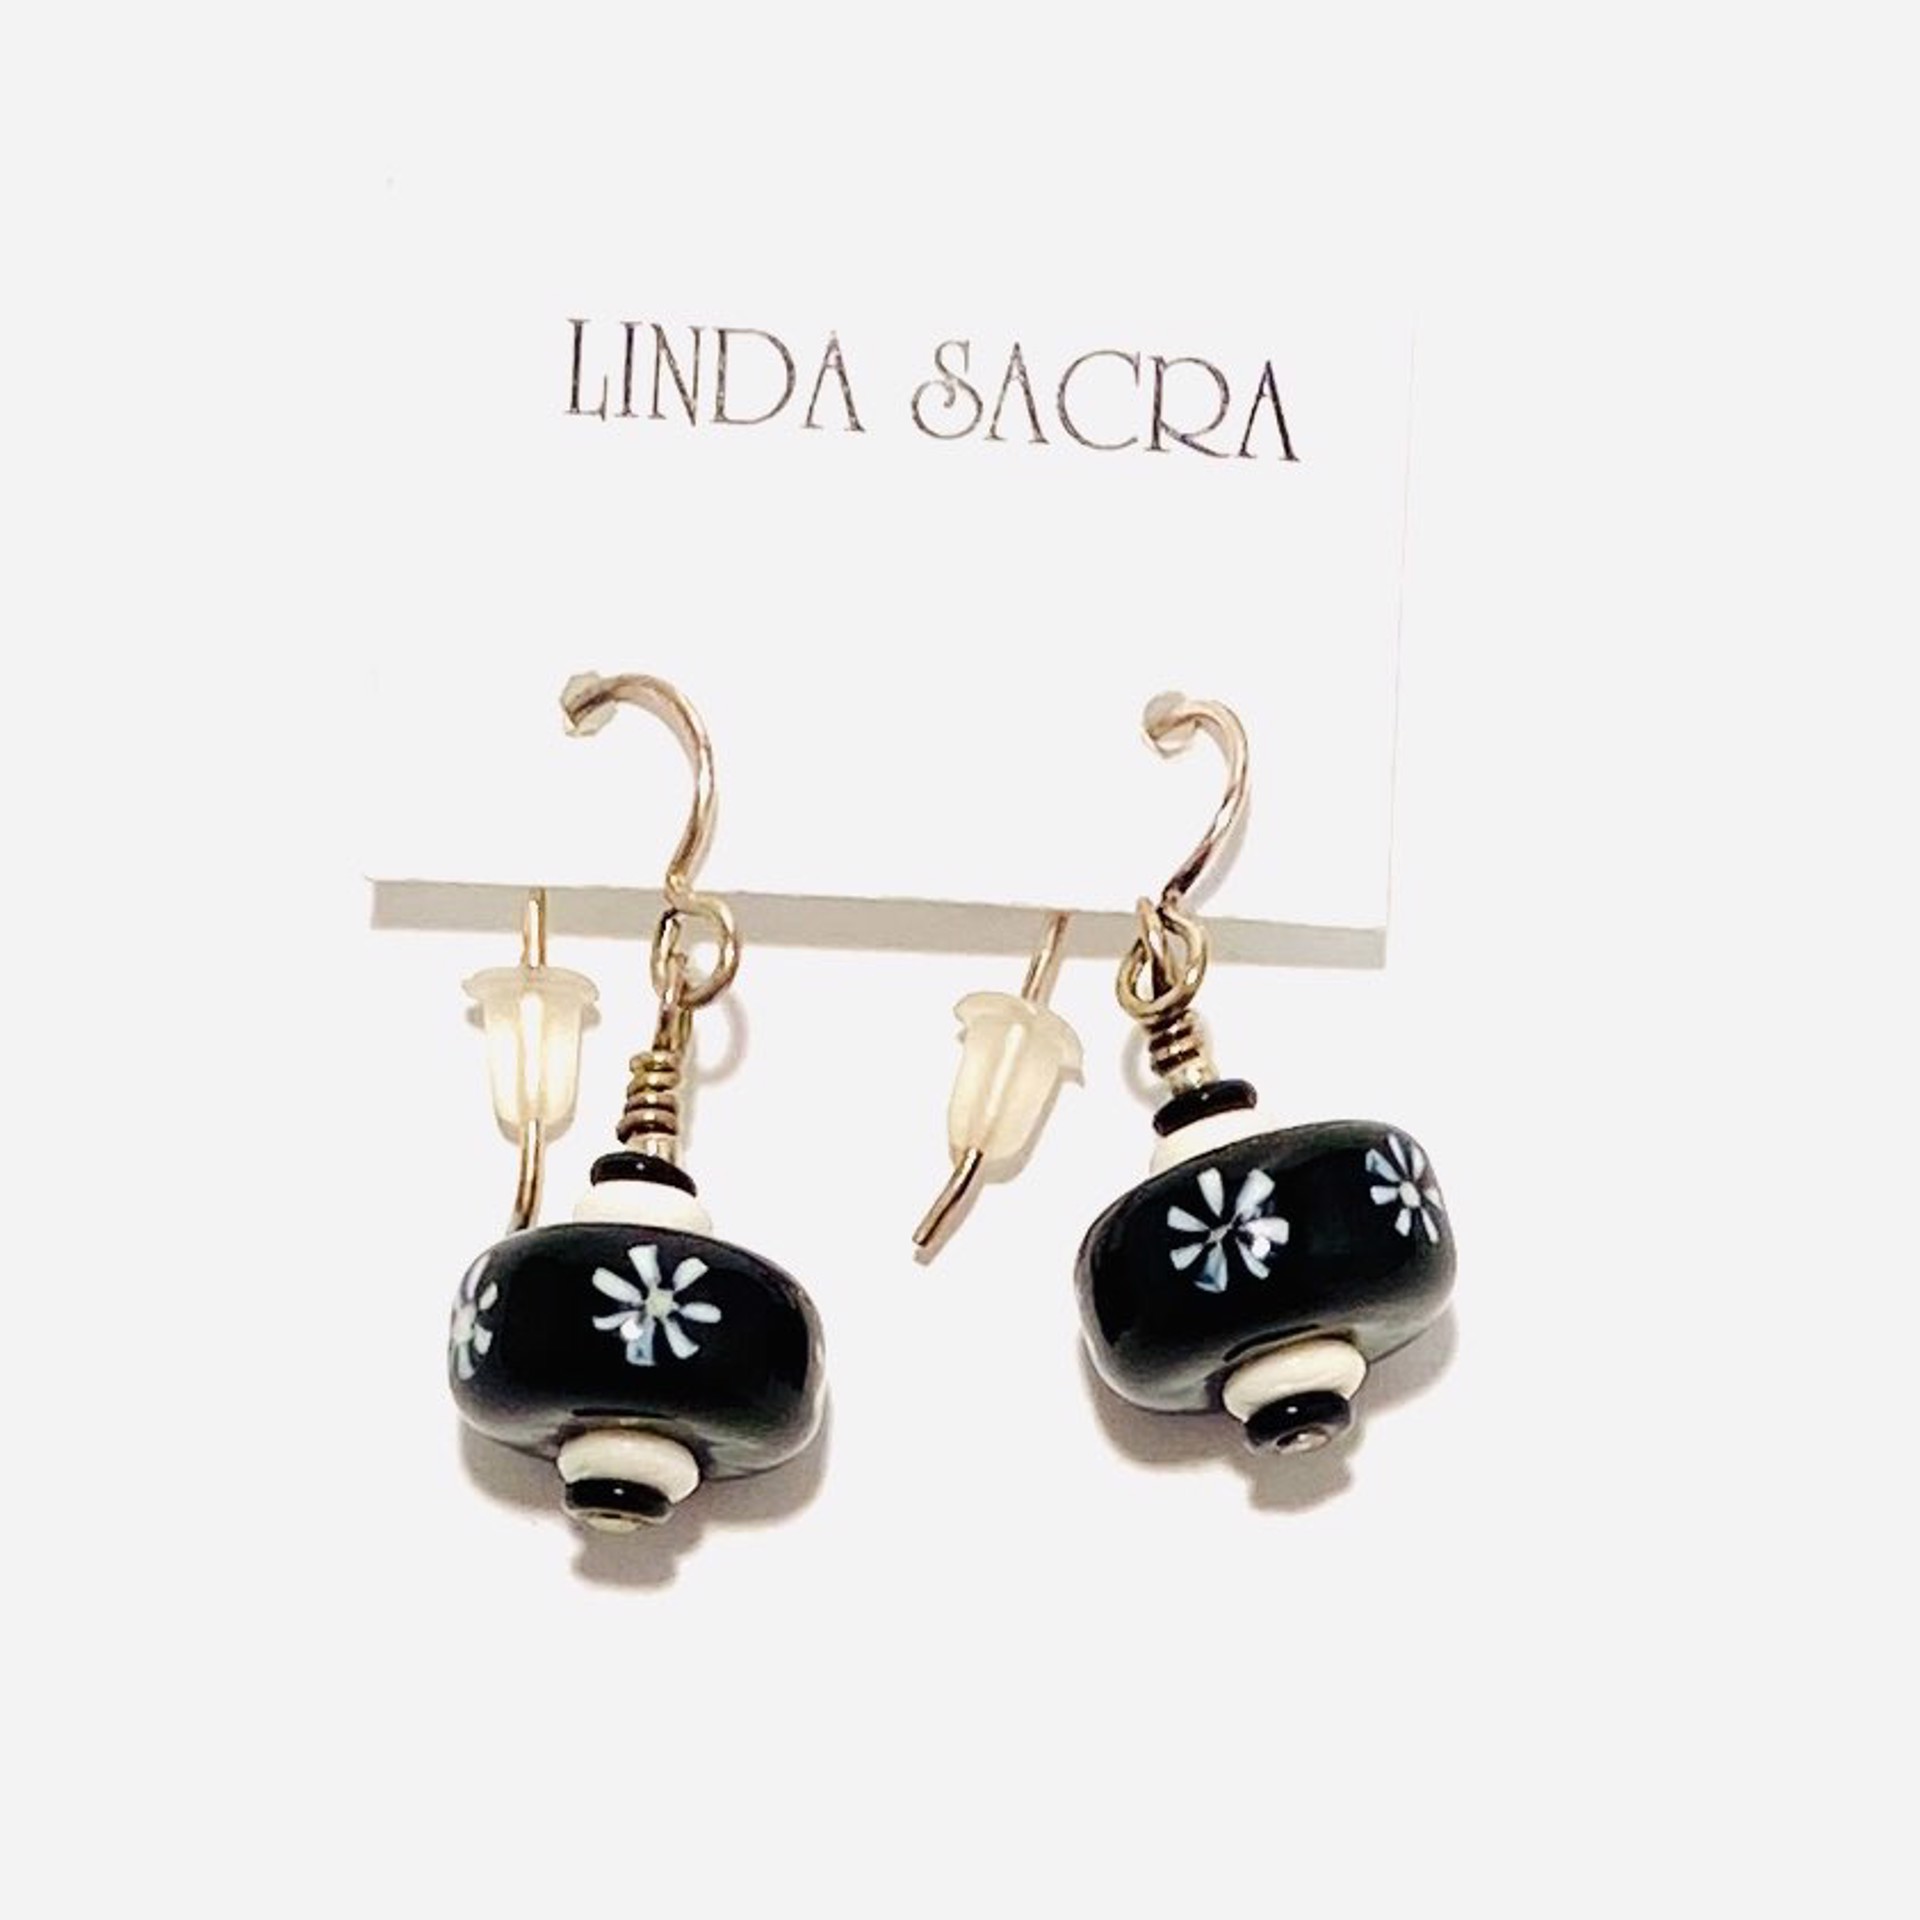 LS20-322 Earrings by Linda Sacra